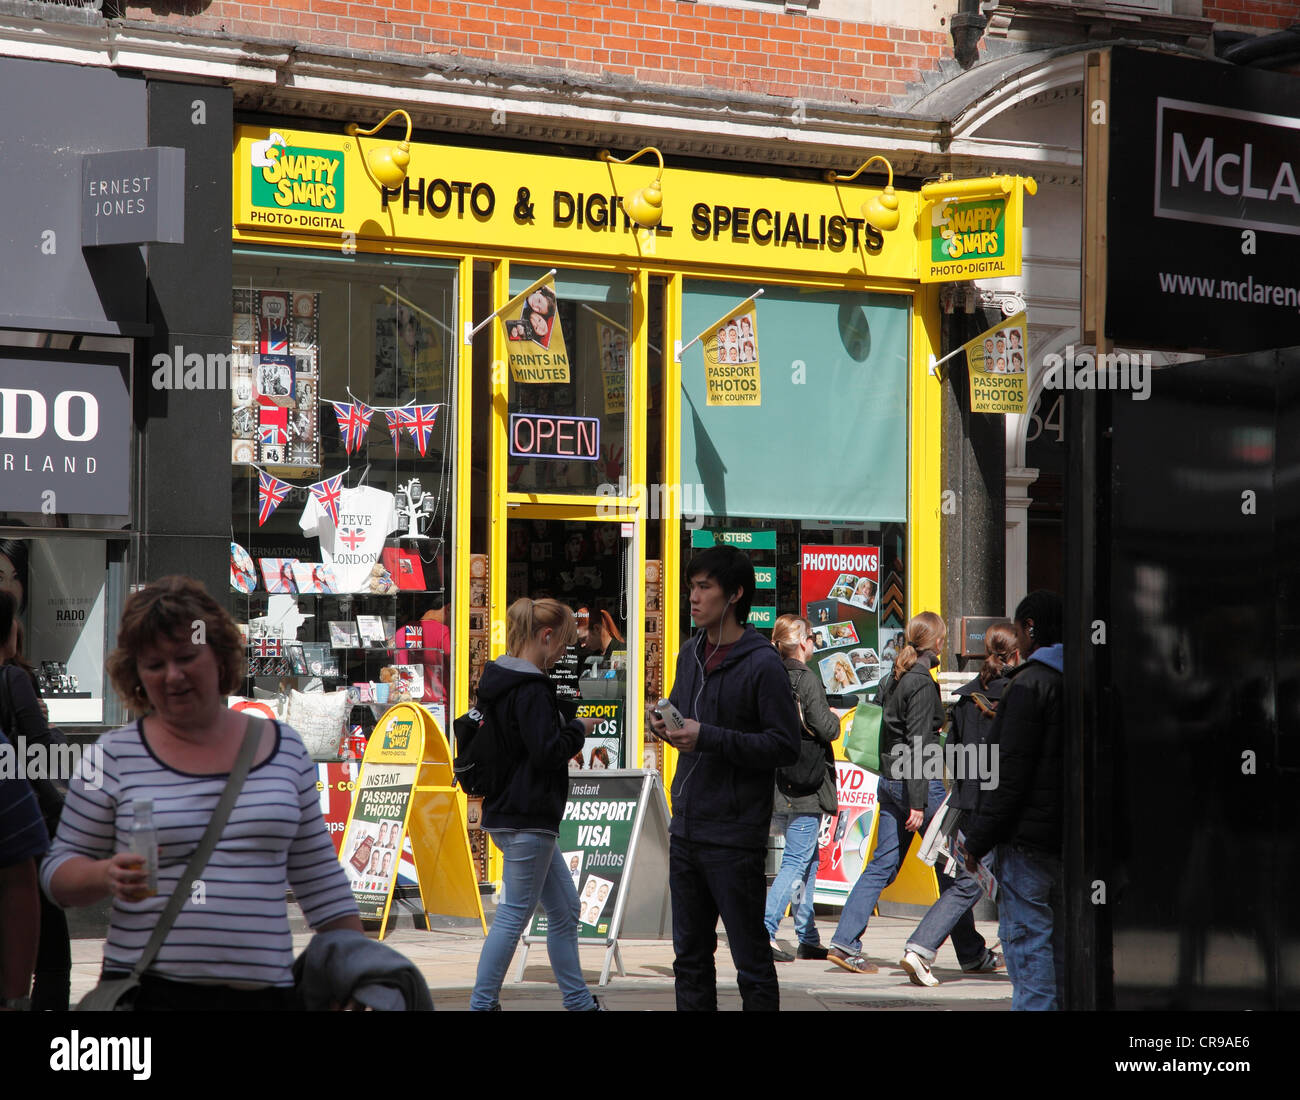 Un Snappy scatta store in London, England, Regno Unito Foto Stock